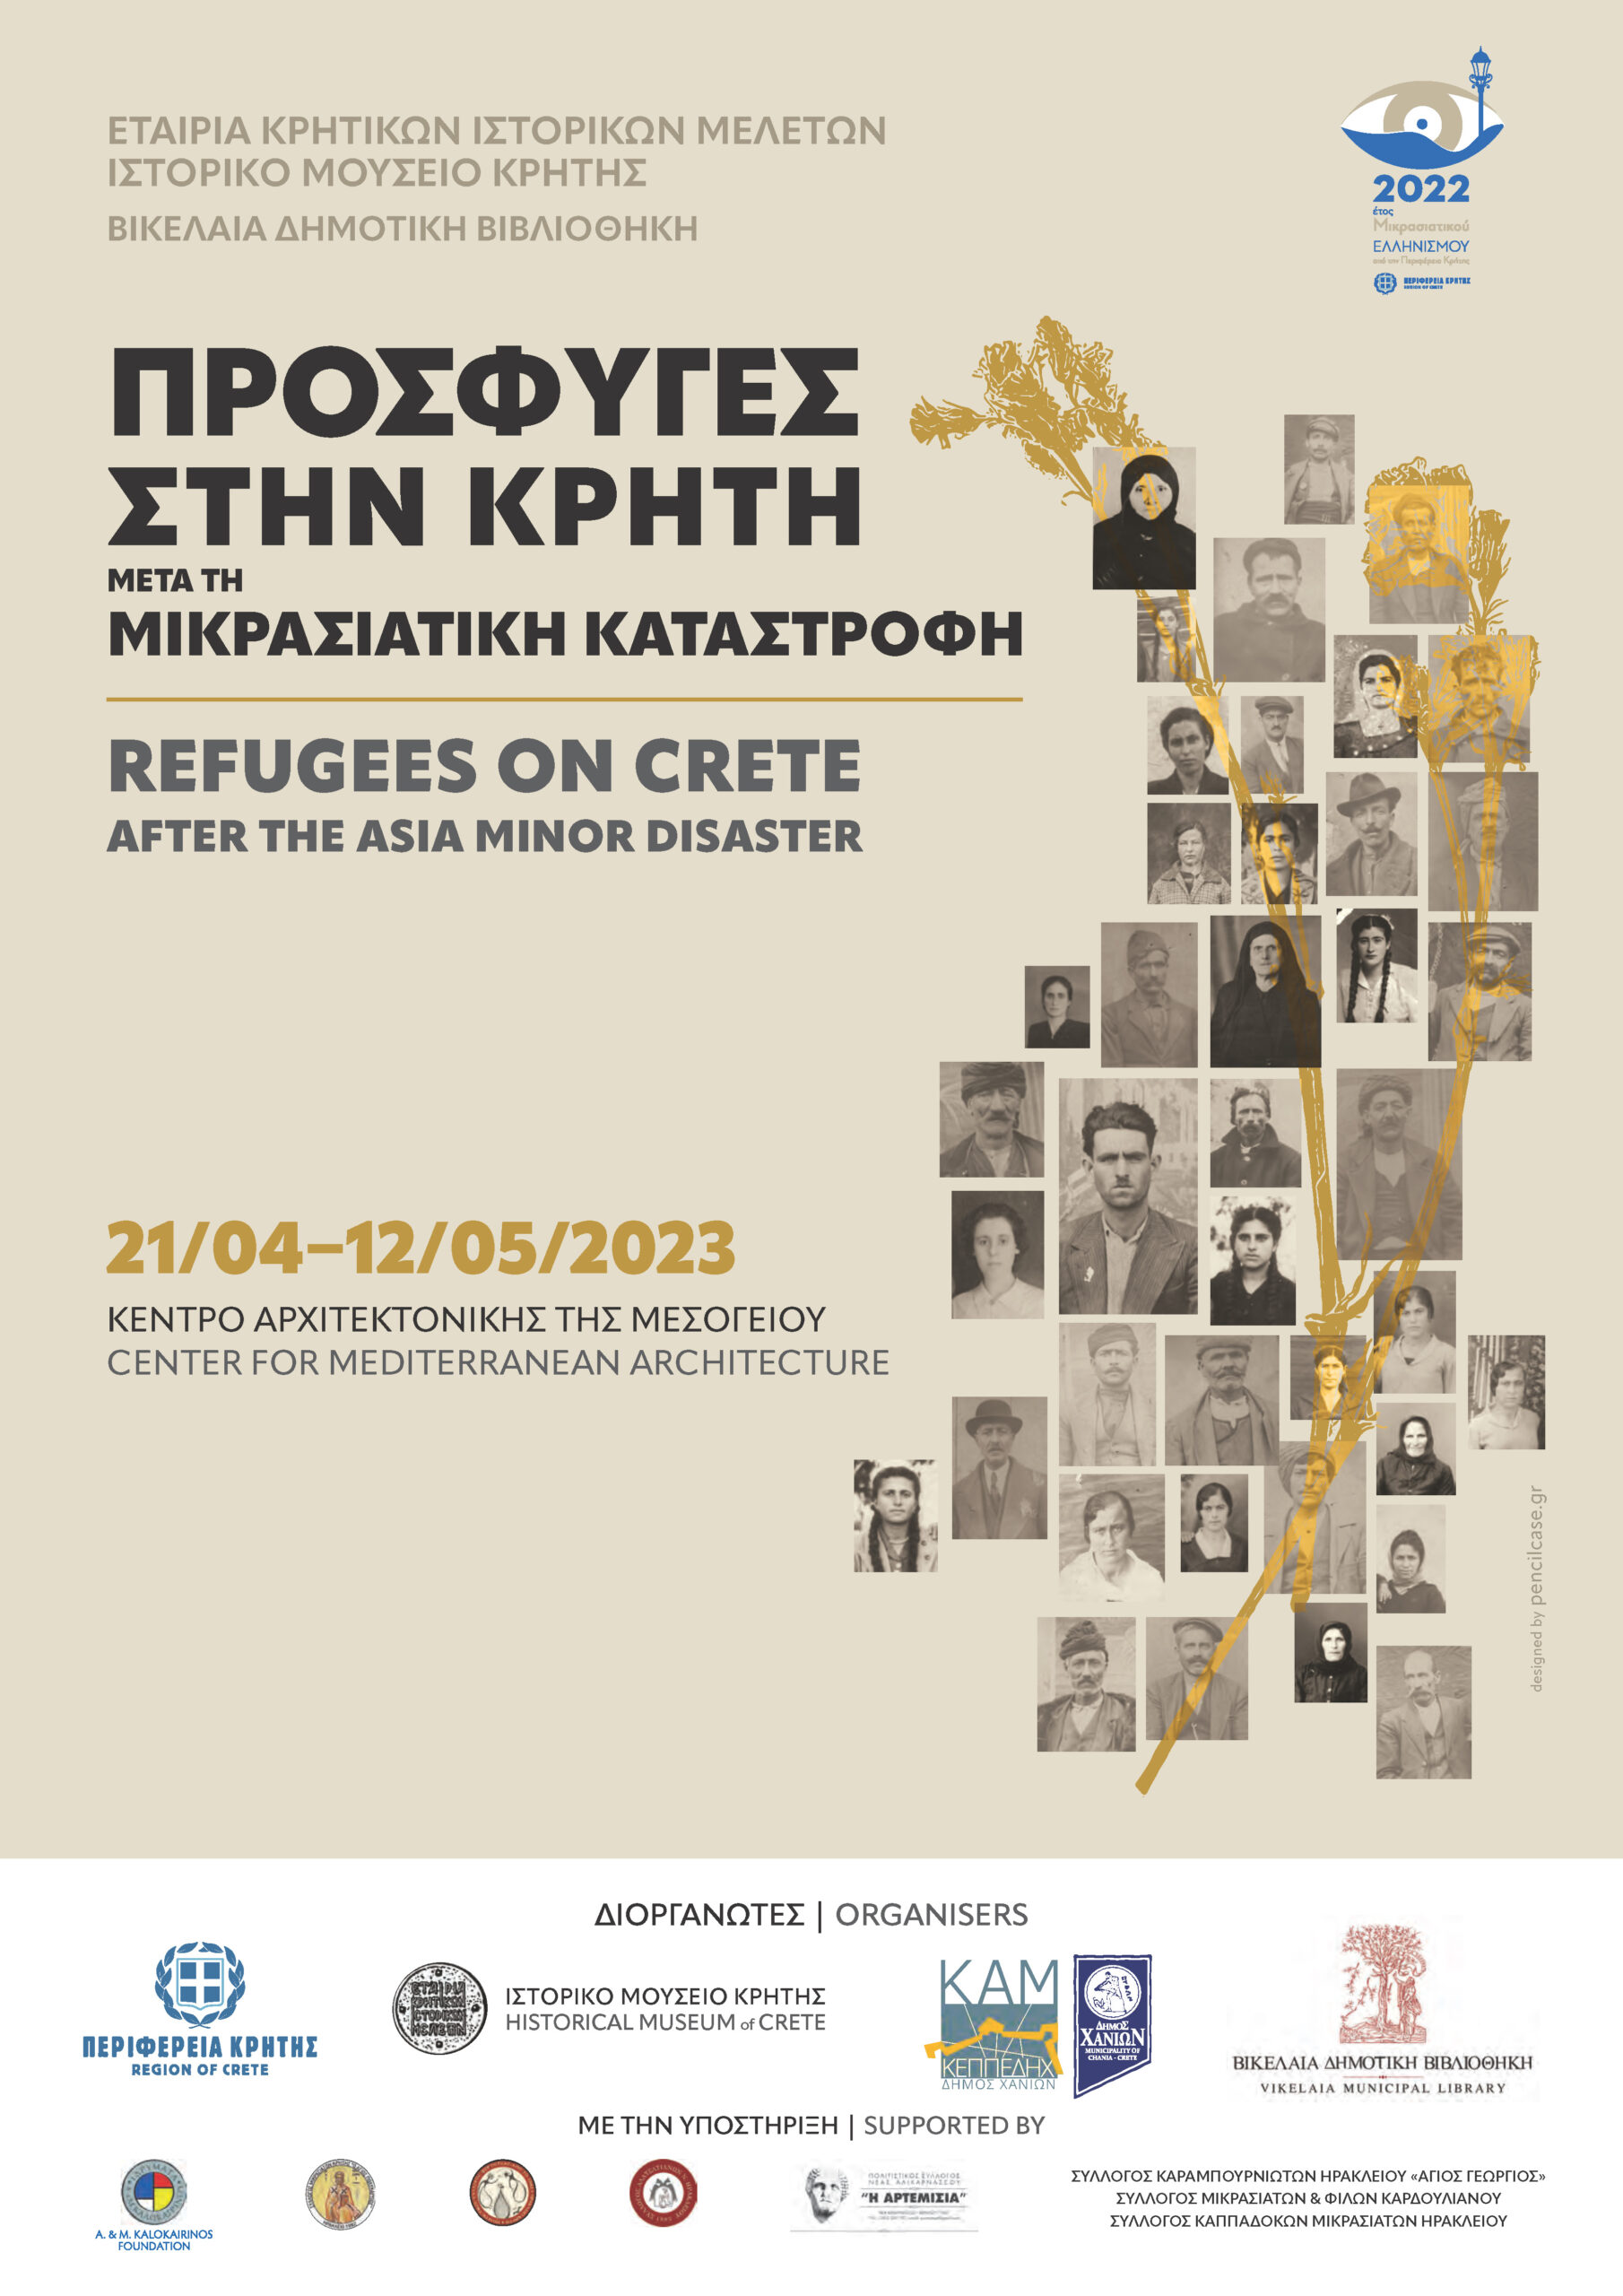 Έκθεση «Πρόσφυγες στην Κρήτη μετά τη Μικρασιατική Καταστροφή»